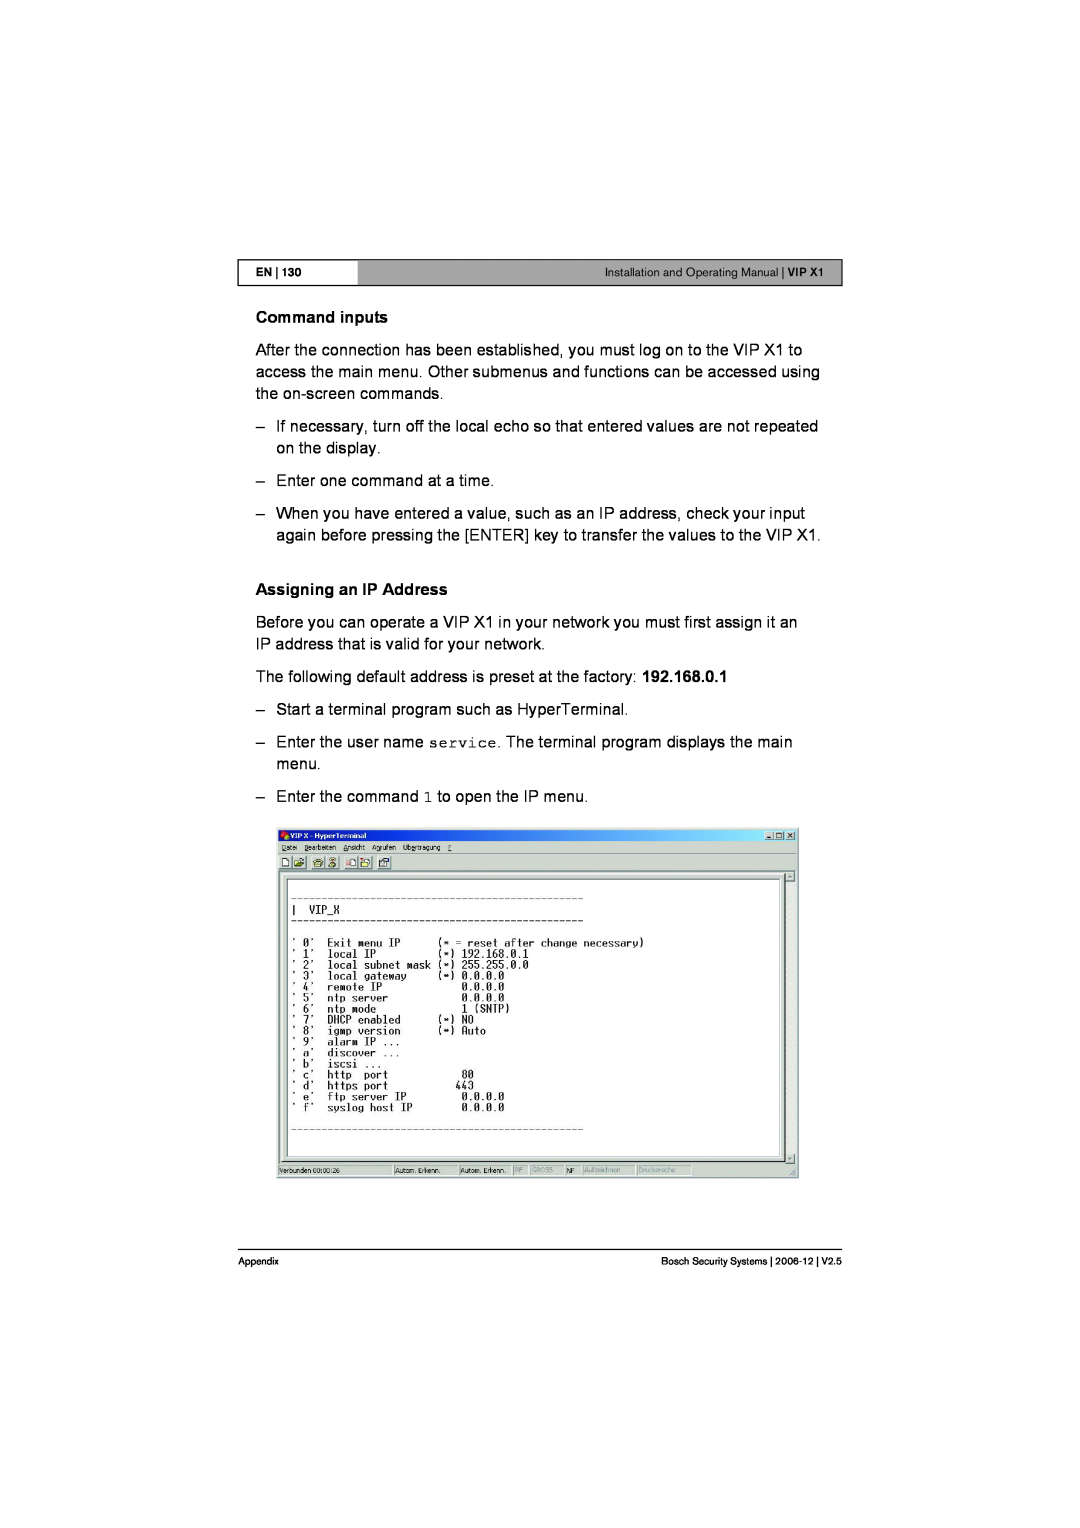 Bosch Appliances VIP X1 manual Command inputs, Assigning an IP Address 